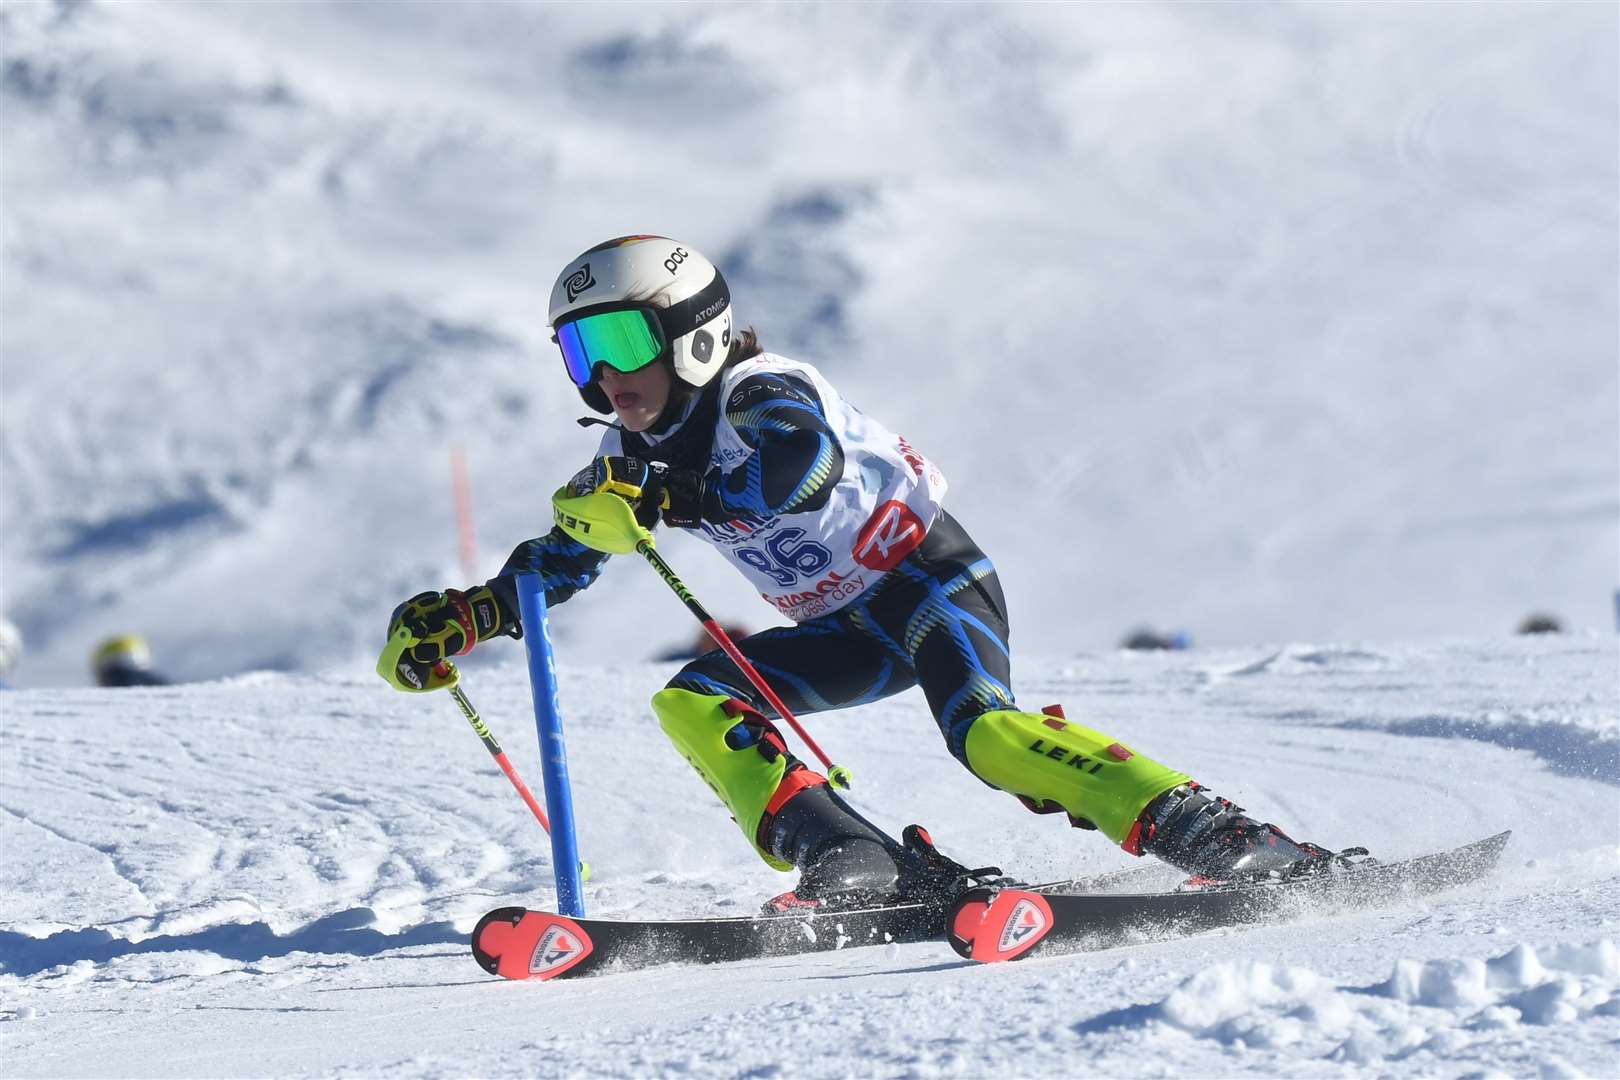 Austin Scott, of Tenterden, in full flight on the ski slopes Picture: Alternative Sports Media